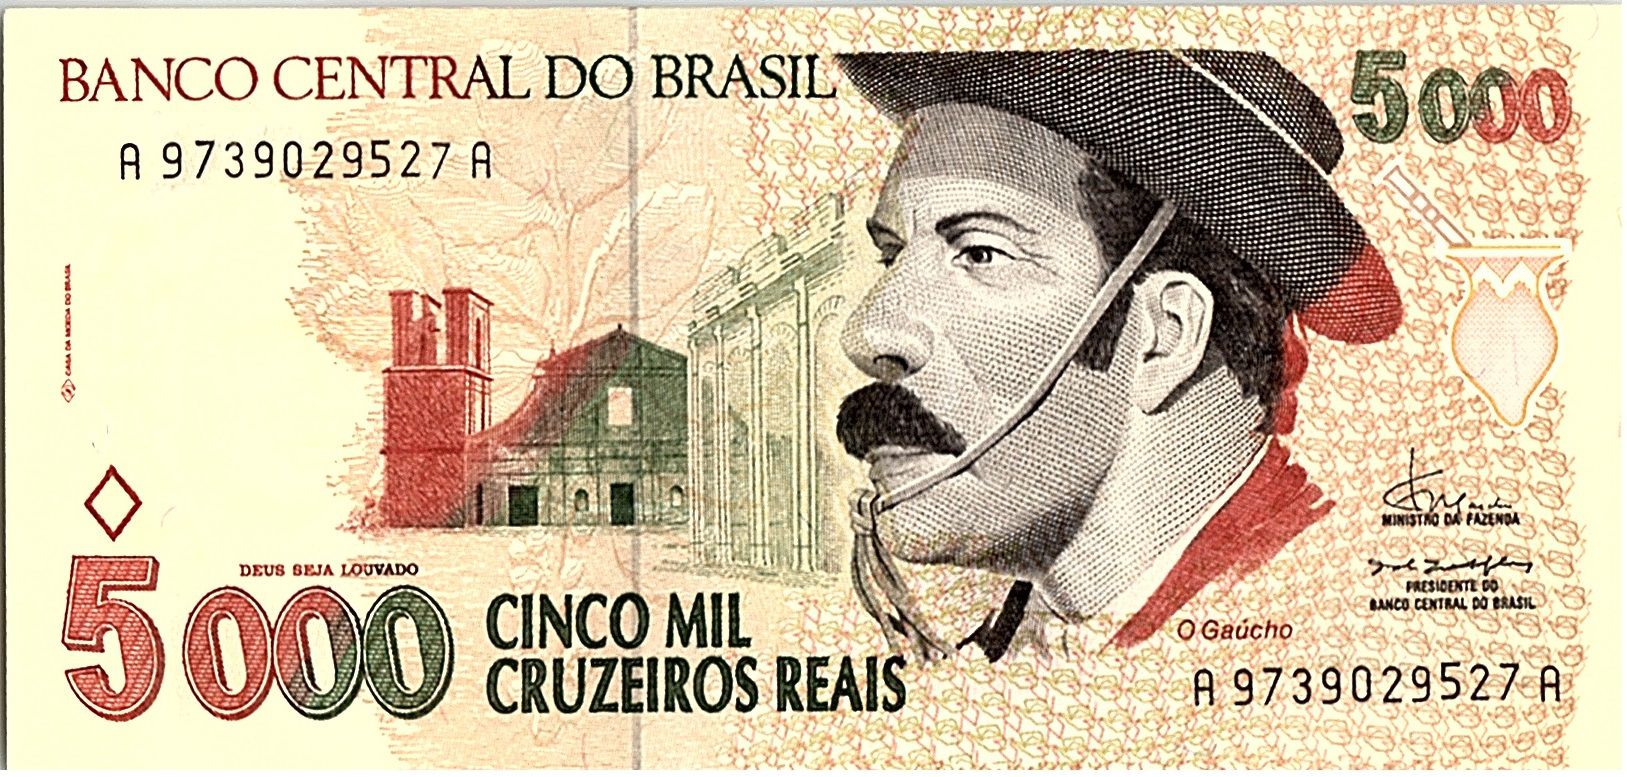 Banco Central Do Brazil 1000 Cruzerio - UNC